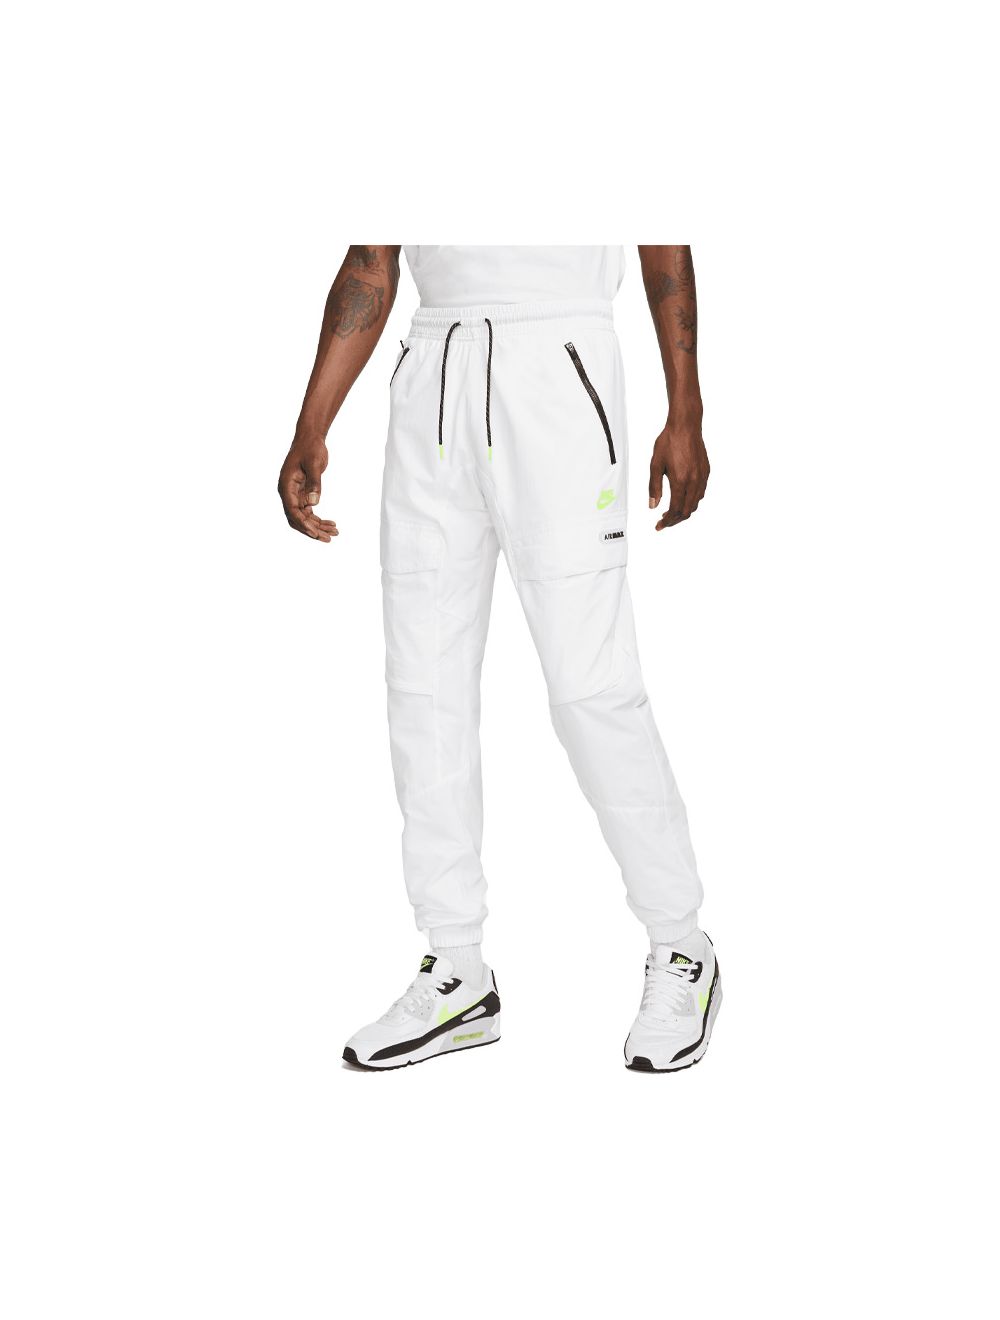 Nike Sportswear Unlined Utility Tan Cargo Pants Men's 2XL / XXL  DN4360-224 NEW | eBay